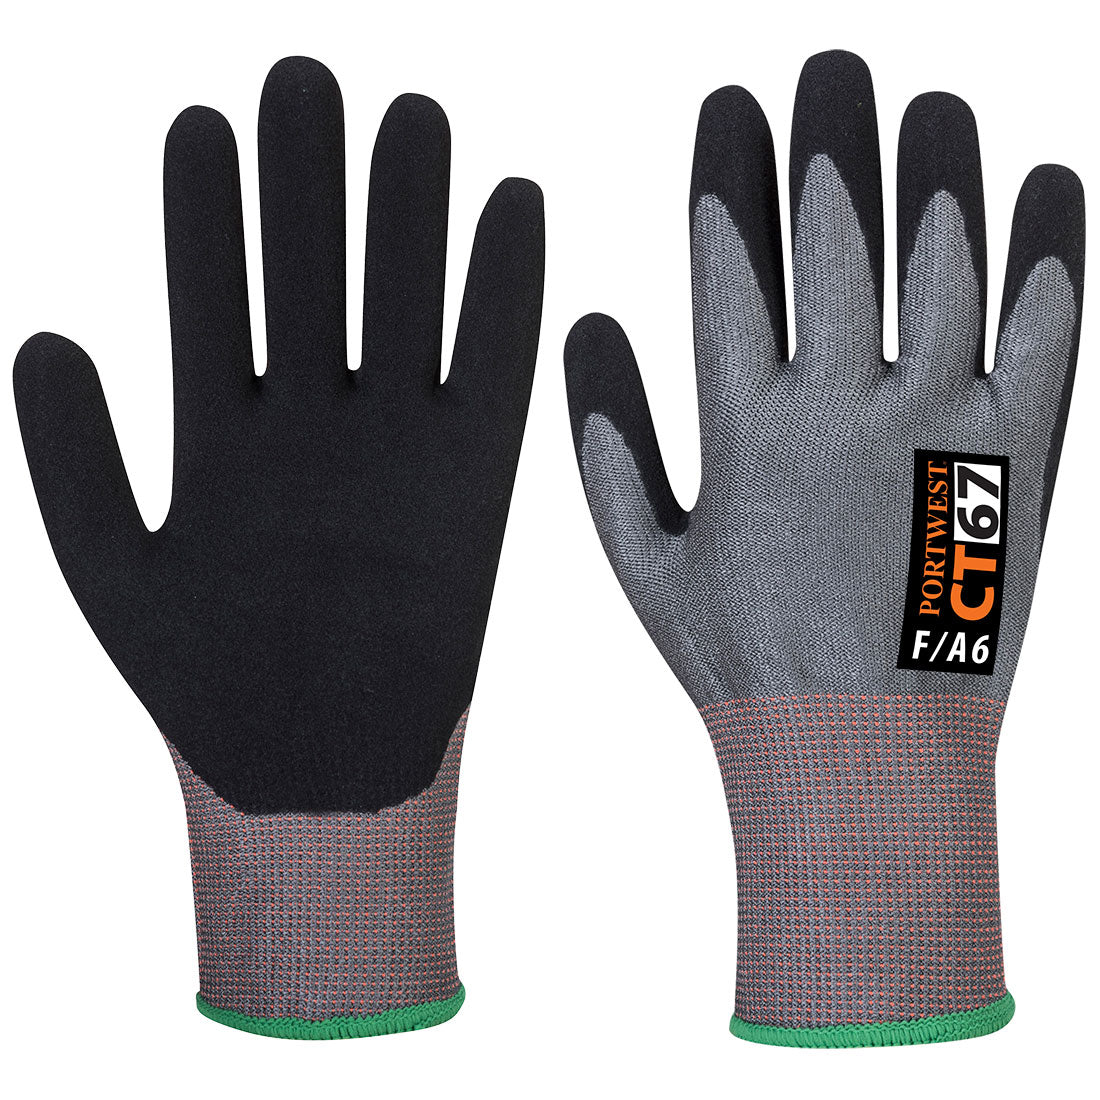 CT Cut F13 Nitrile Glove